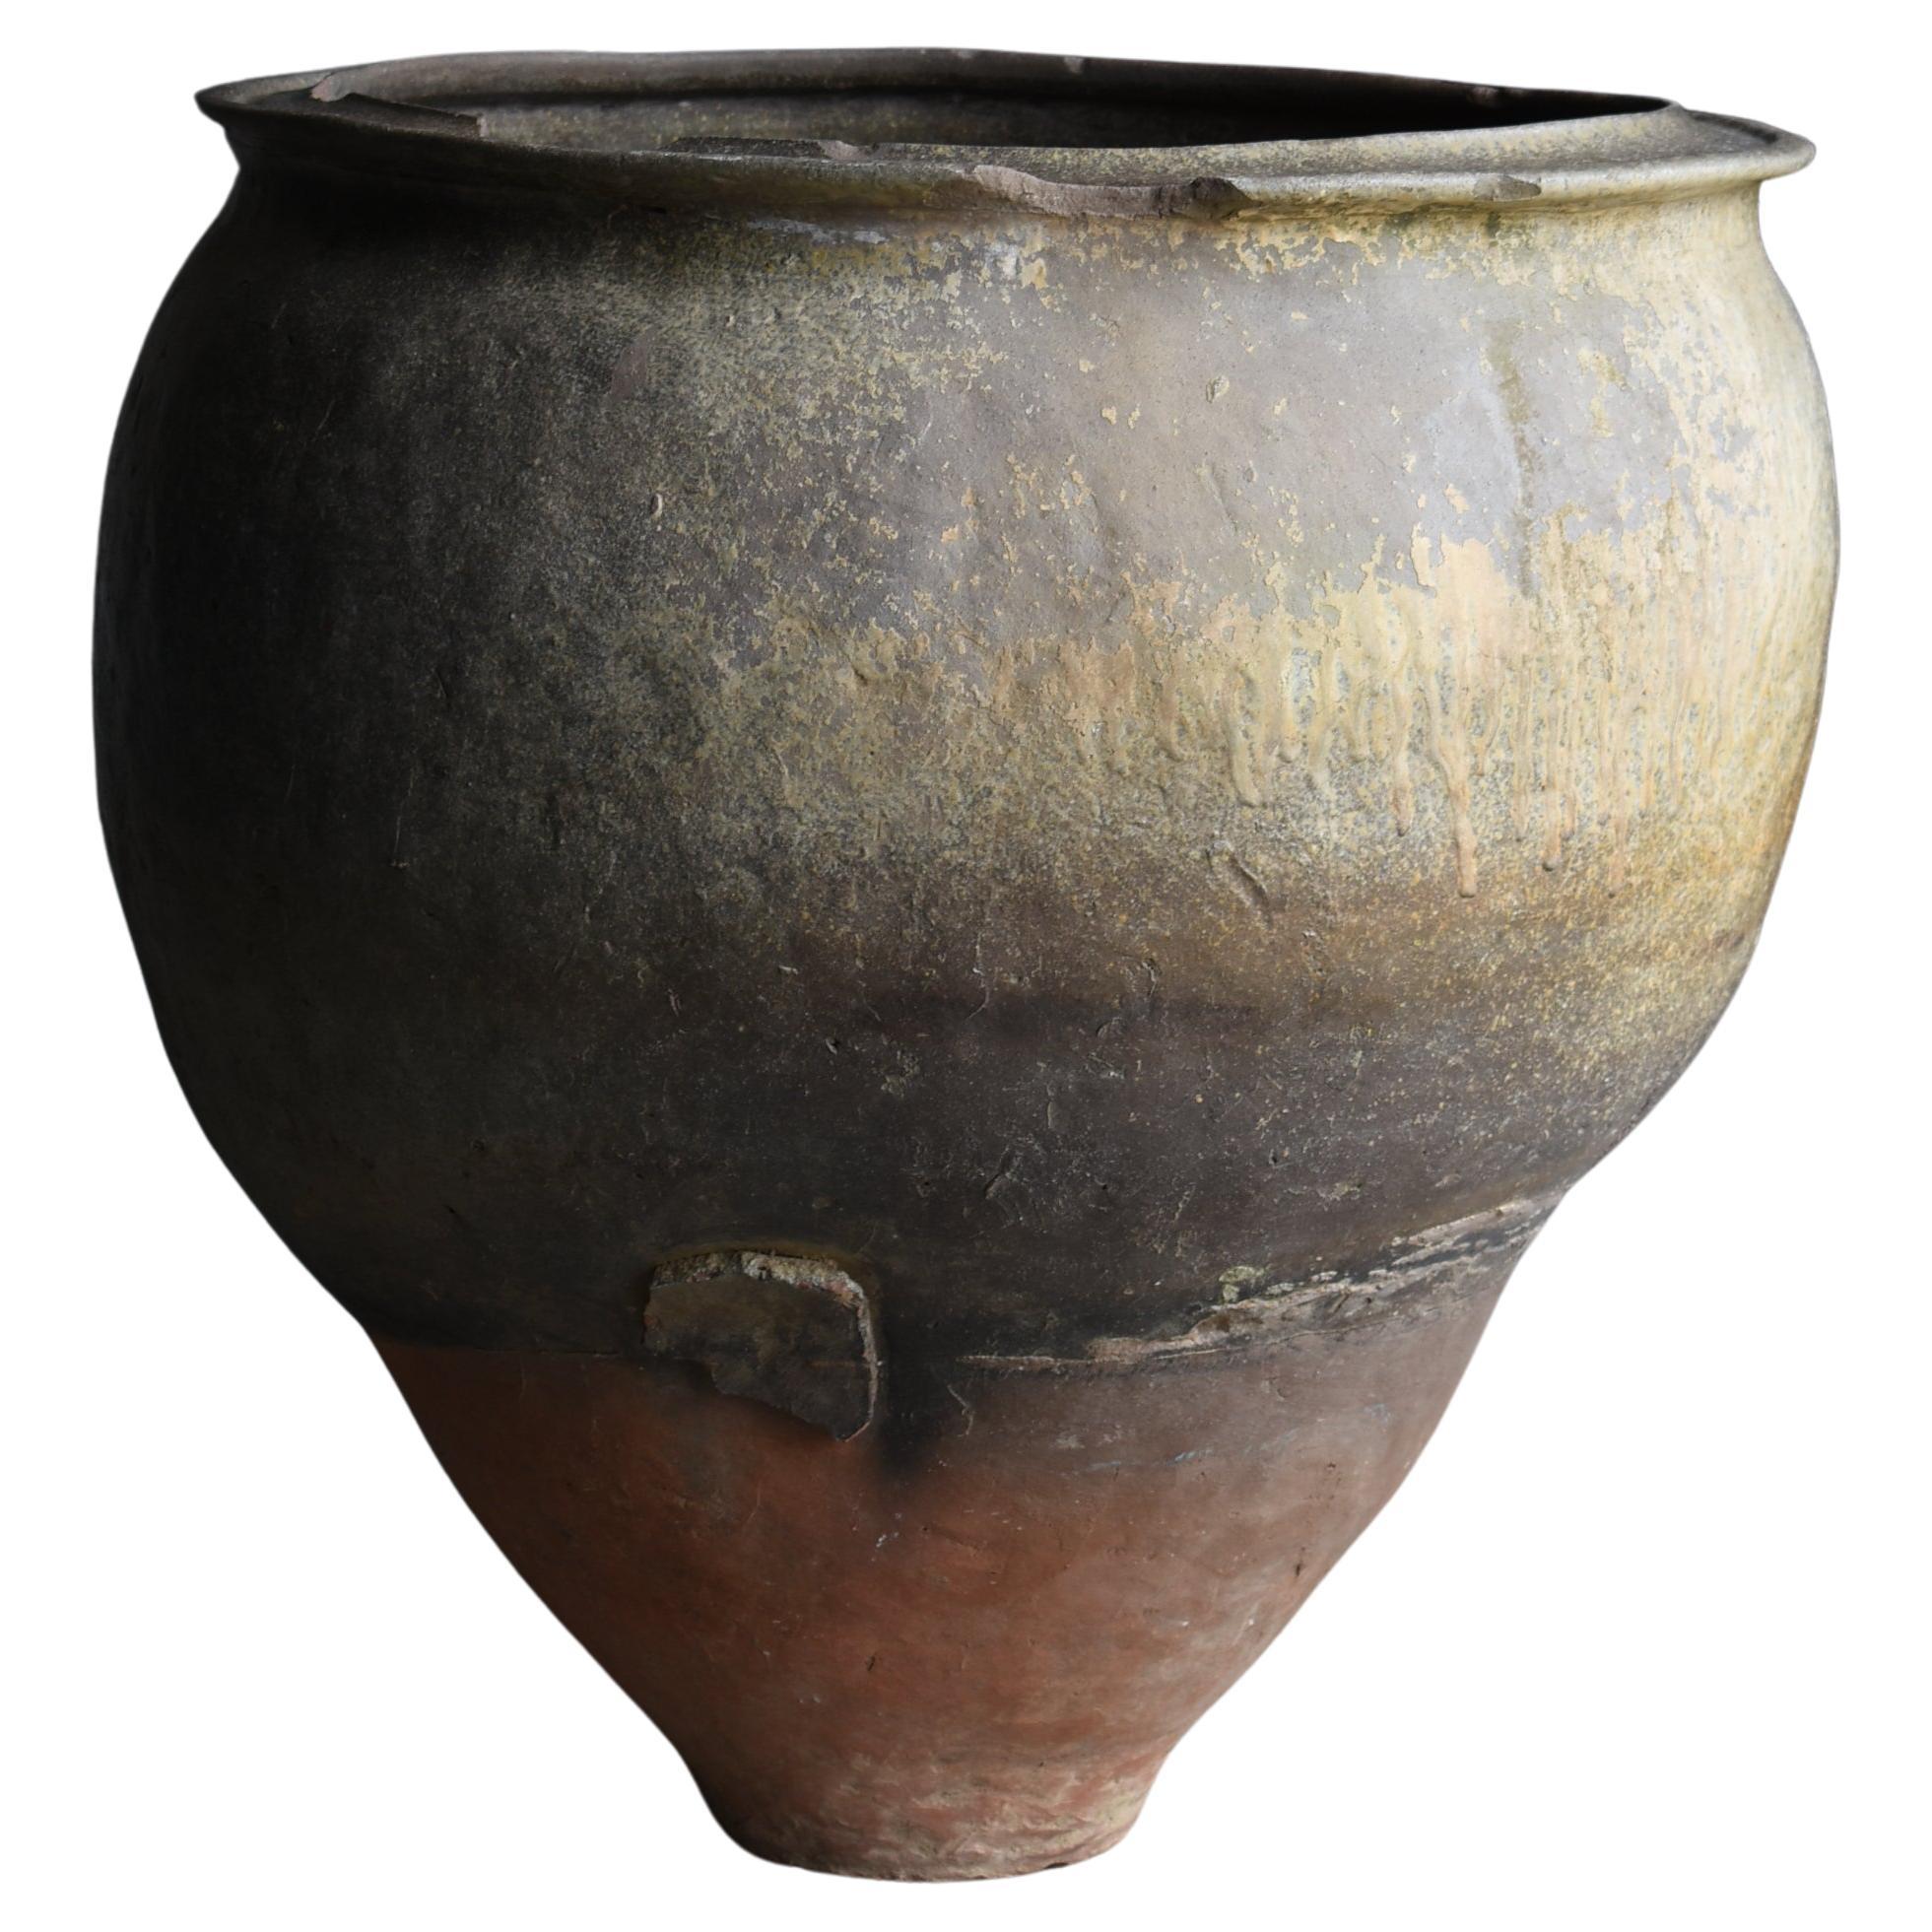 Japanese Antique Huge Pottery Vase 1700s-1750s / Flower Vase Wabi Sabi